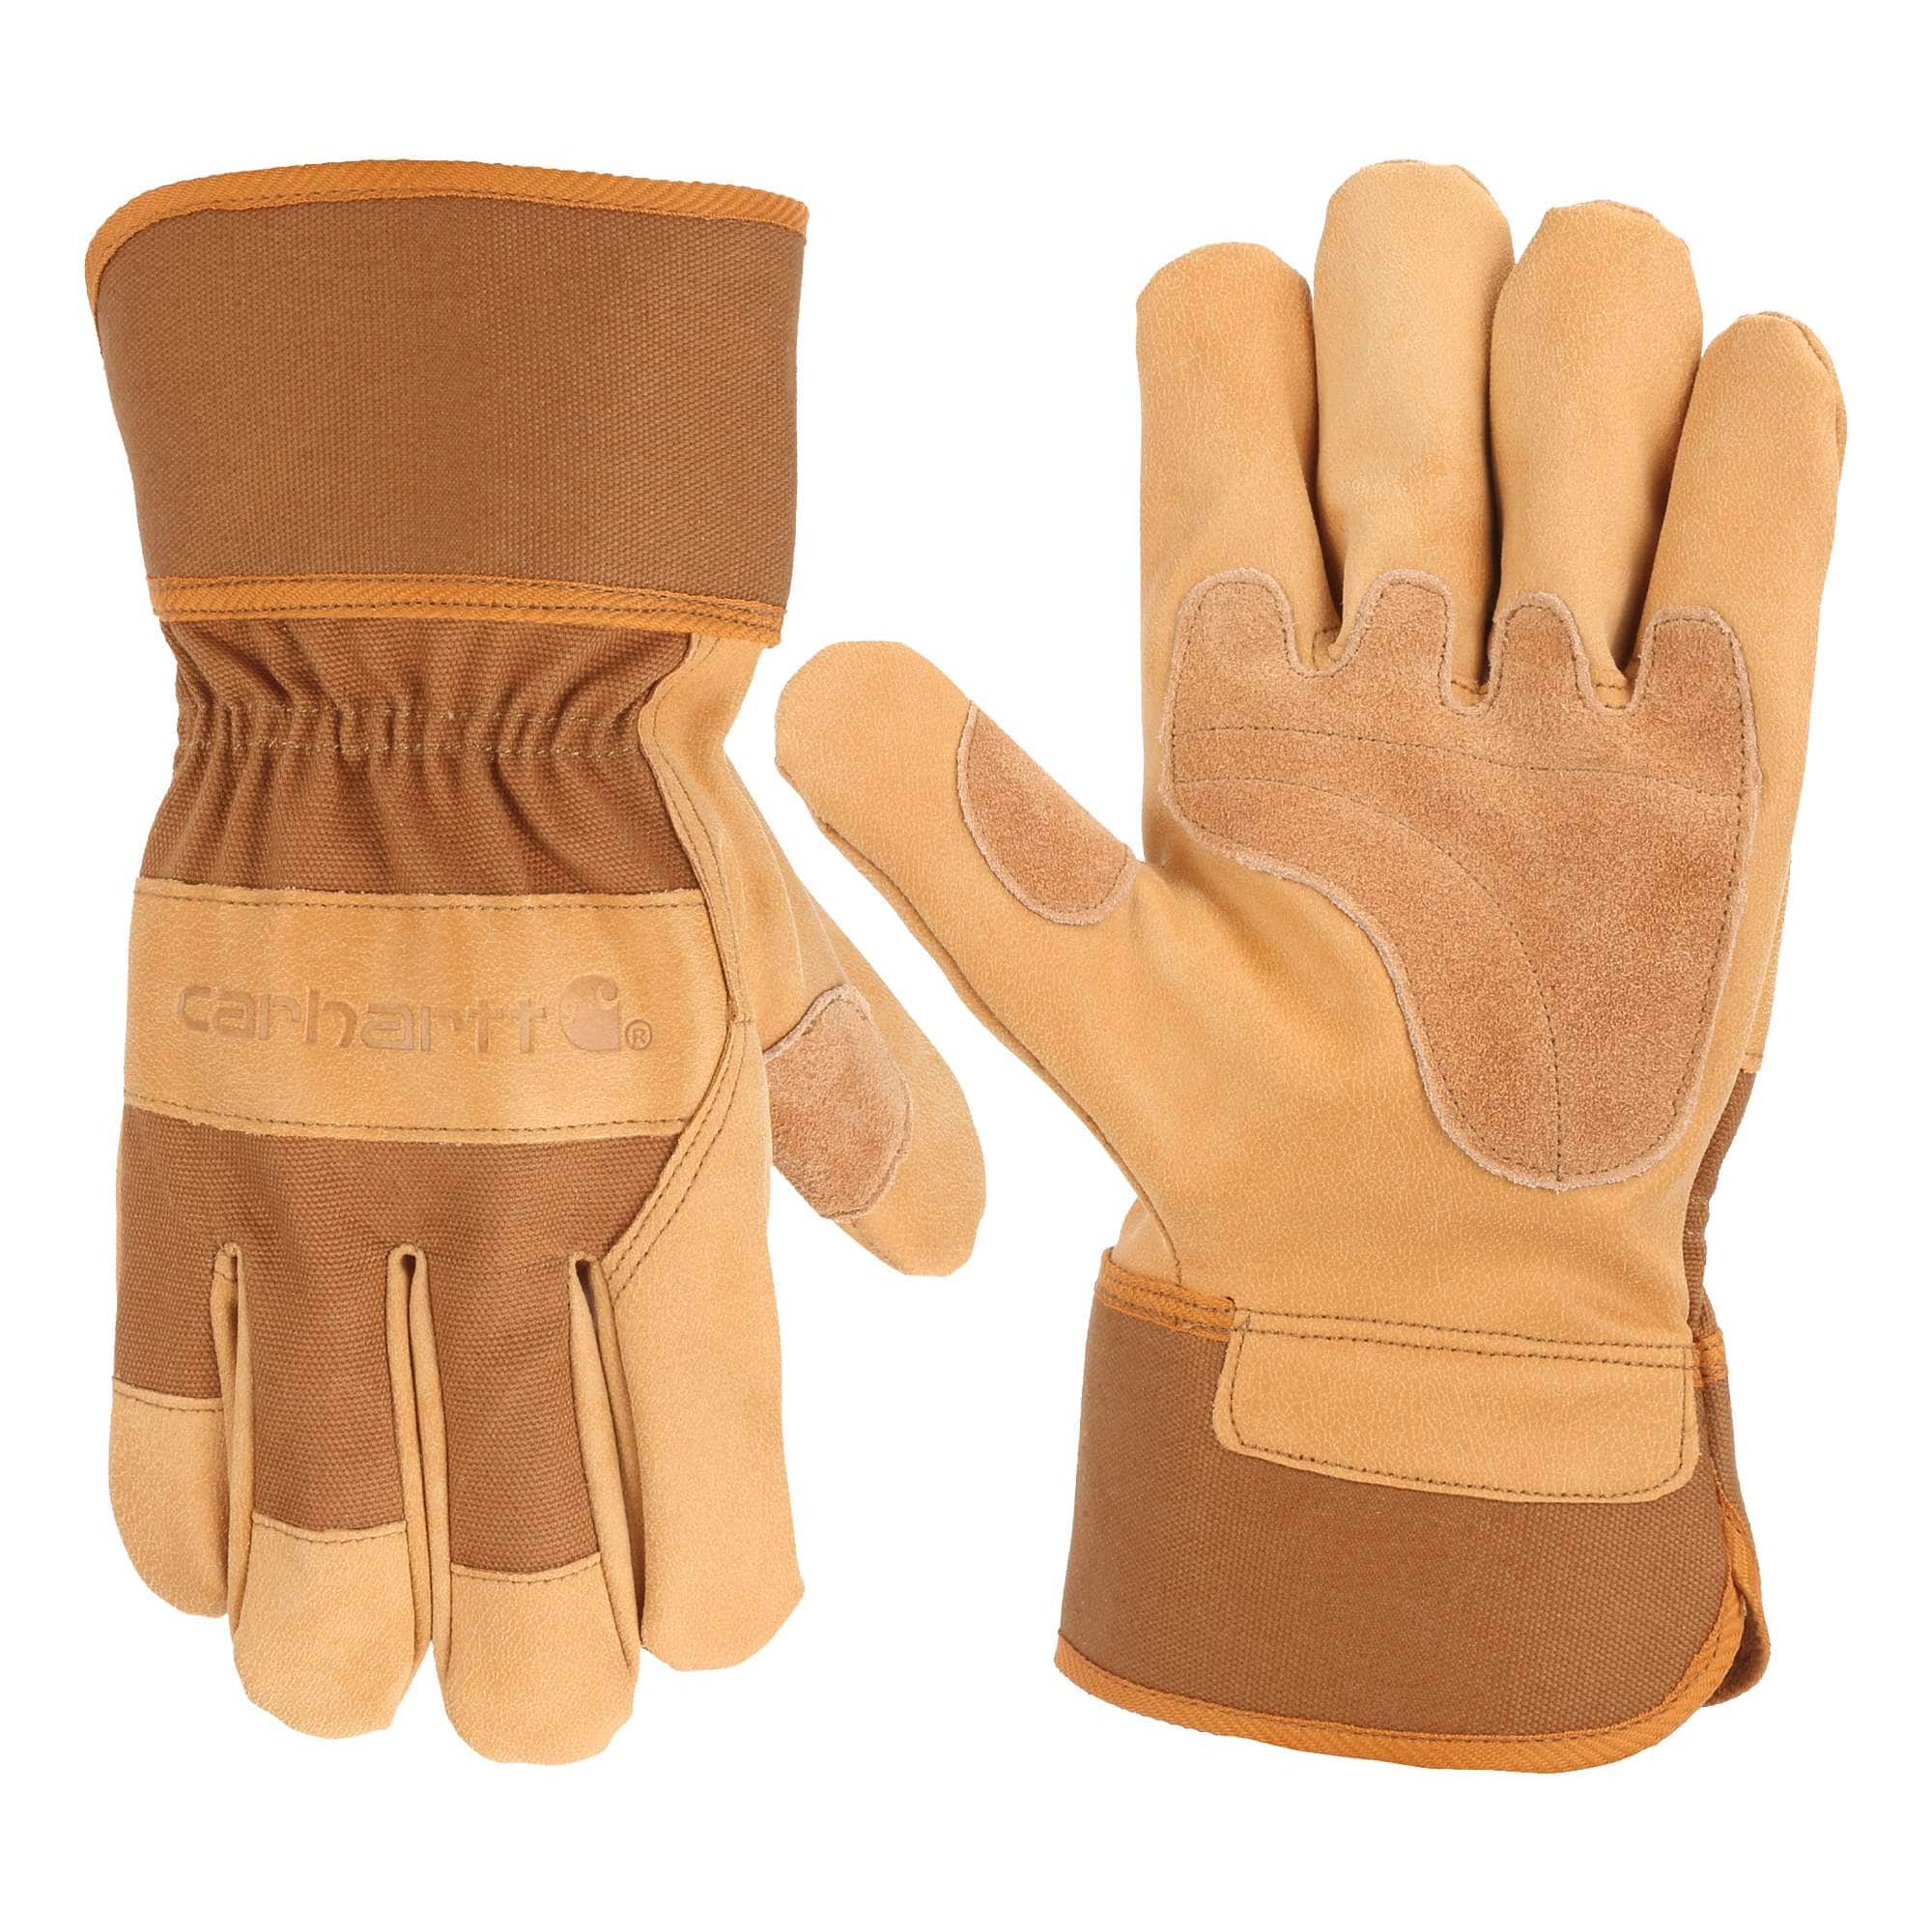 Safety Cuff Work Glove